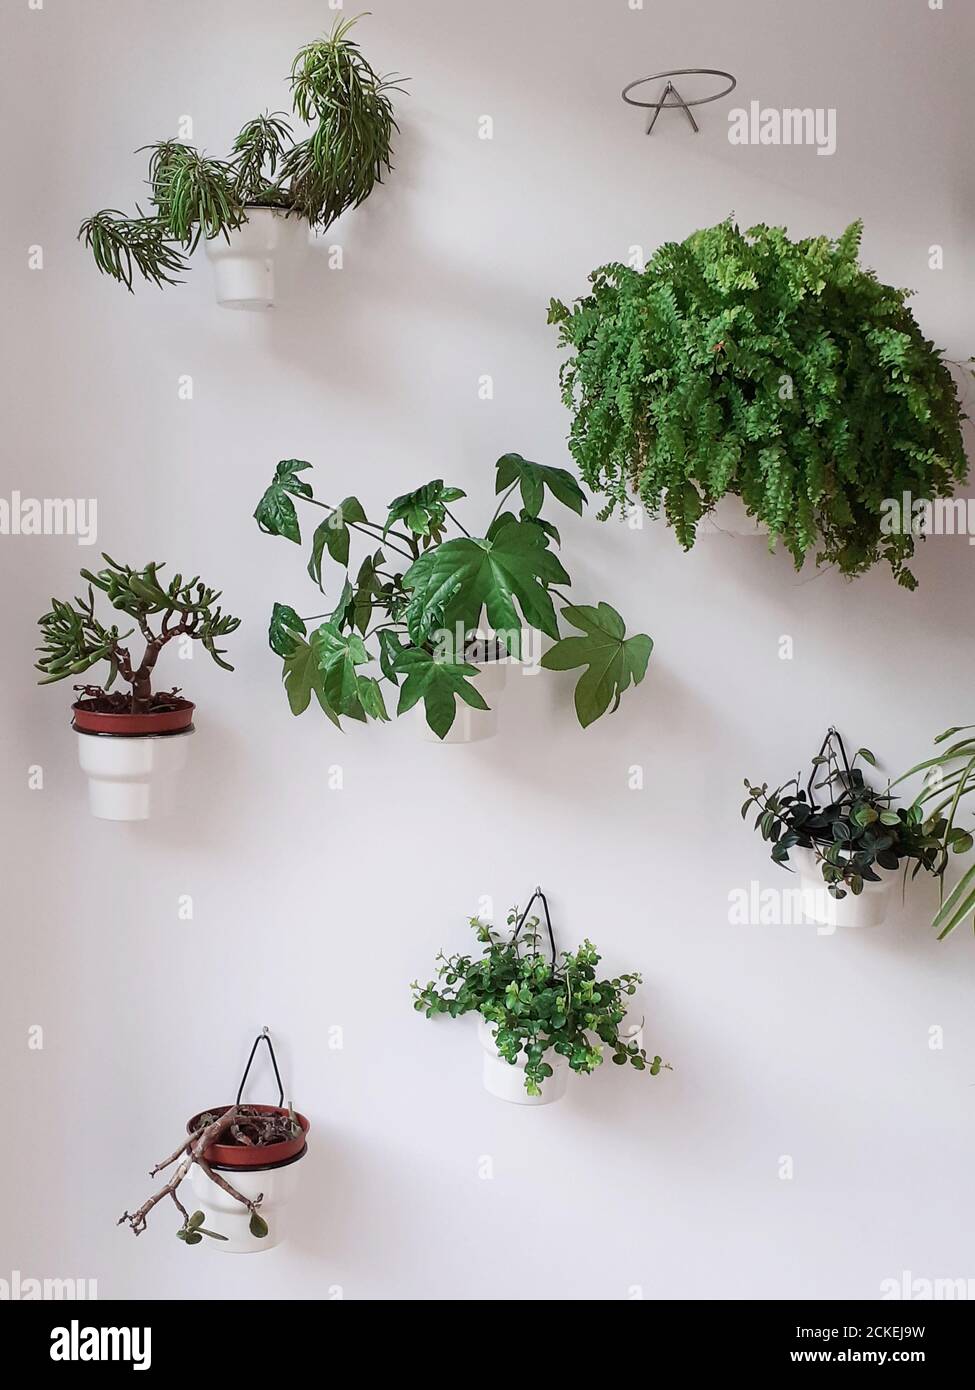 Pflanzen hängen in einer weißen Wand Stockfotografie - Alamy